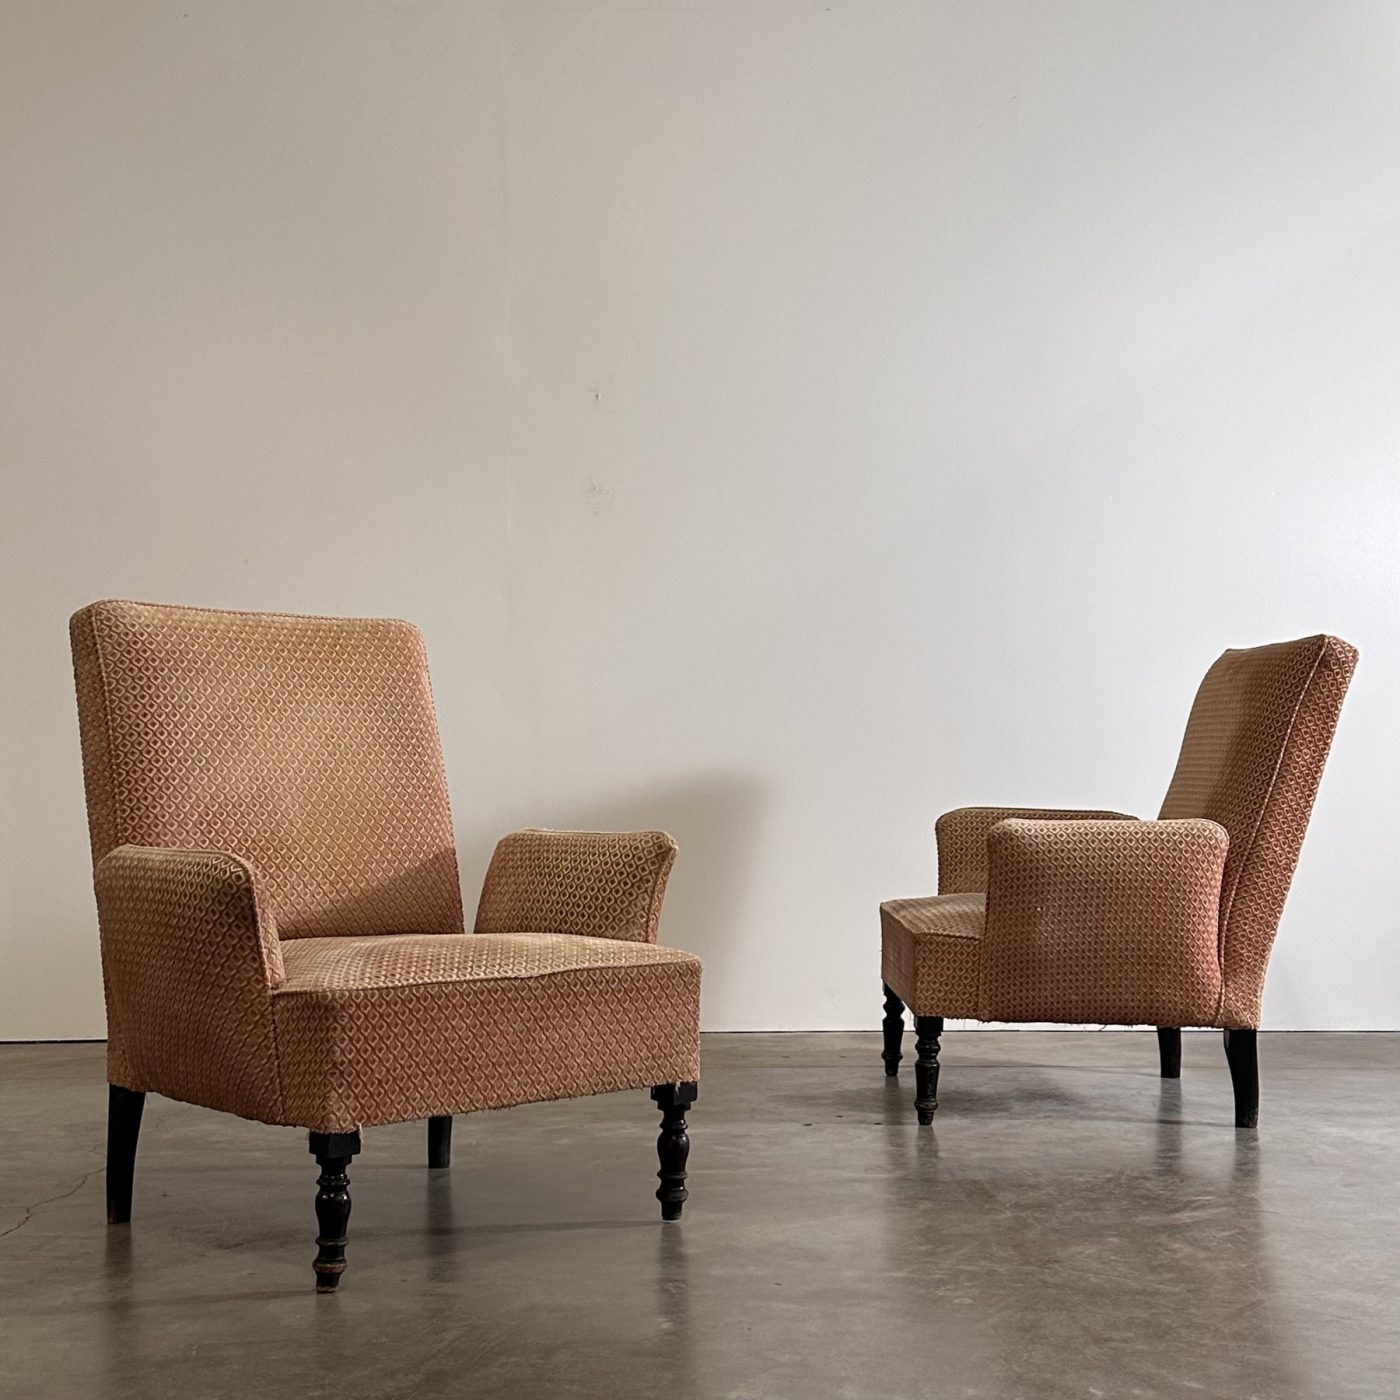 objet-vagabond-napoleon3-armchairs0003